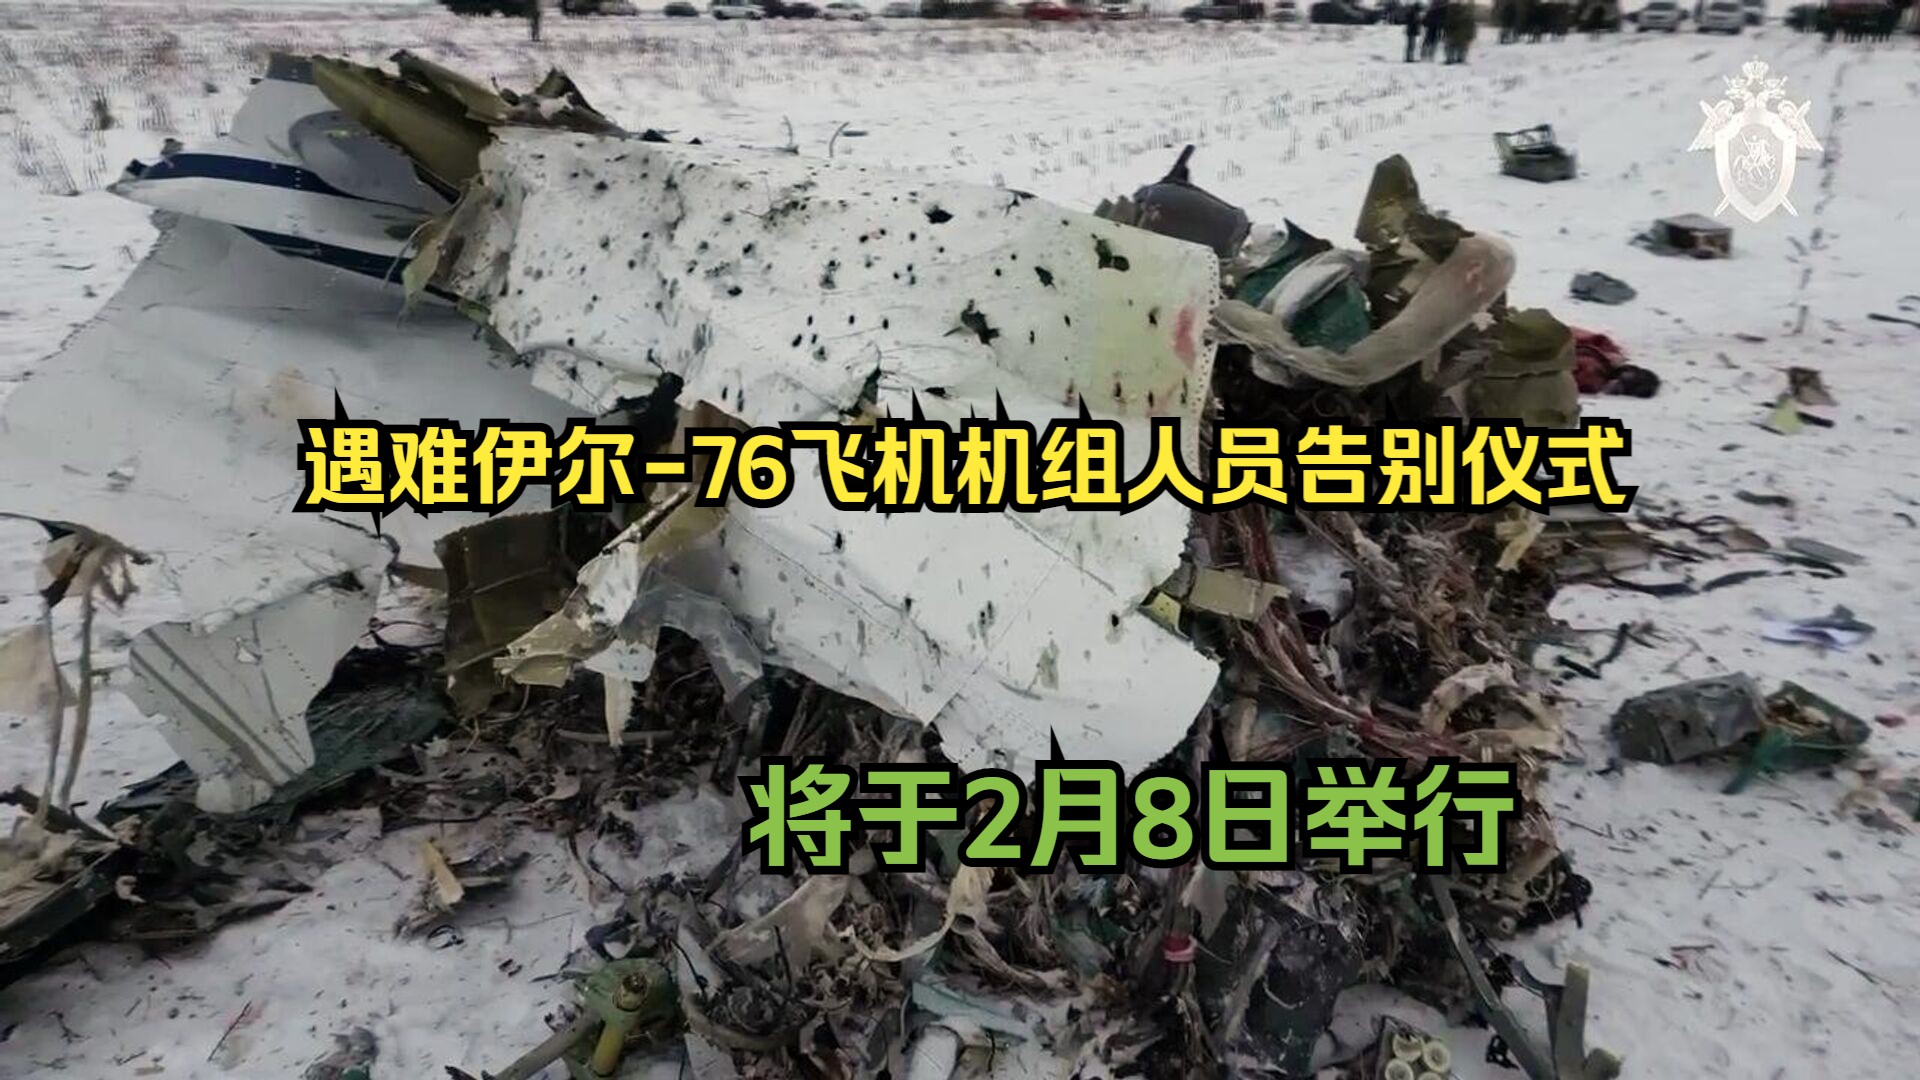 遇难伊尔-76飞机机组人员告别仪式将于2月8日举行